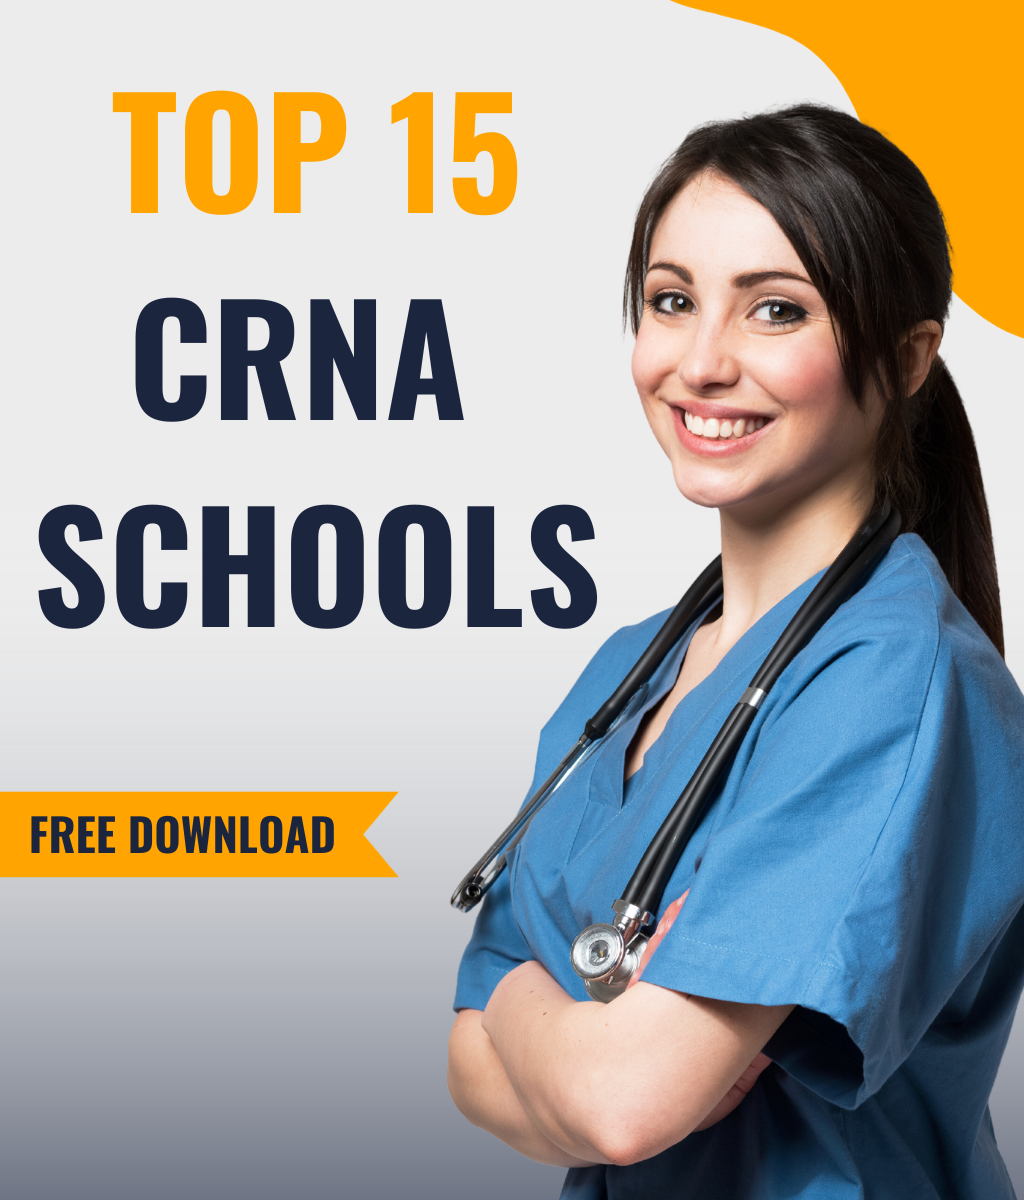 Top 15 CRNA Schools for 2022